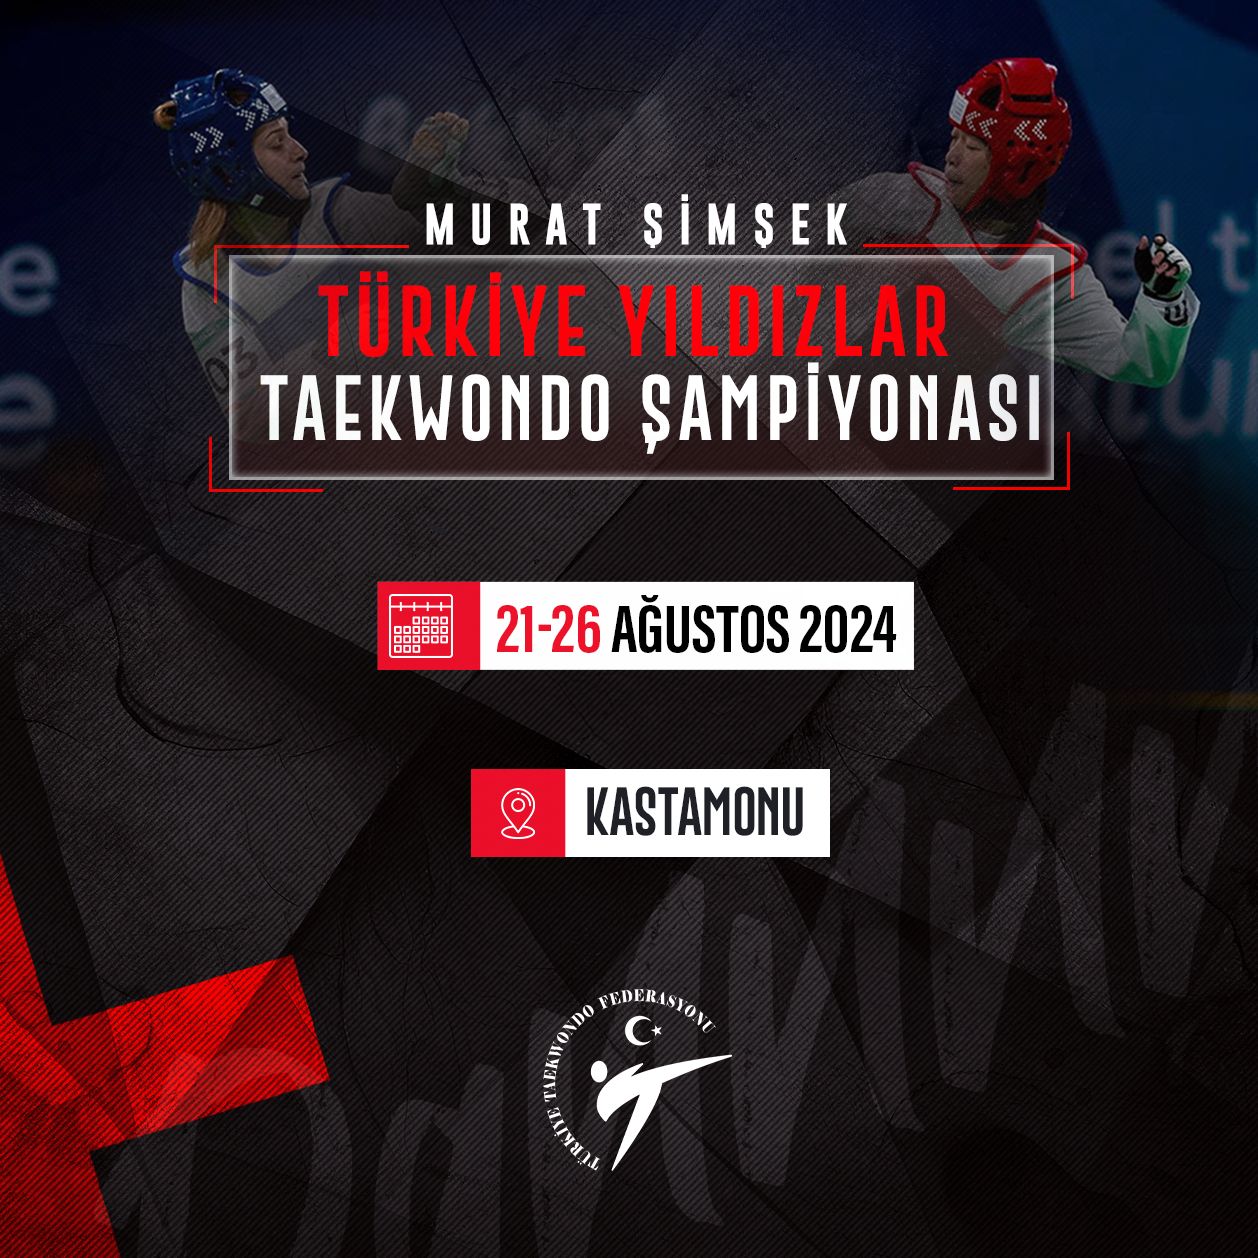 Murat Şimşek 2024 Türkiye Yıldızlar Taekwondo Şampiyonası (Program & Kayıt)